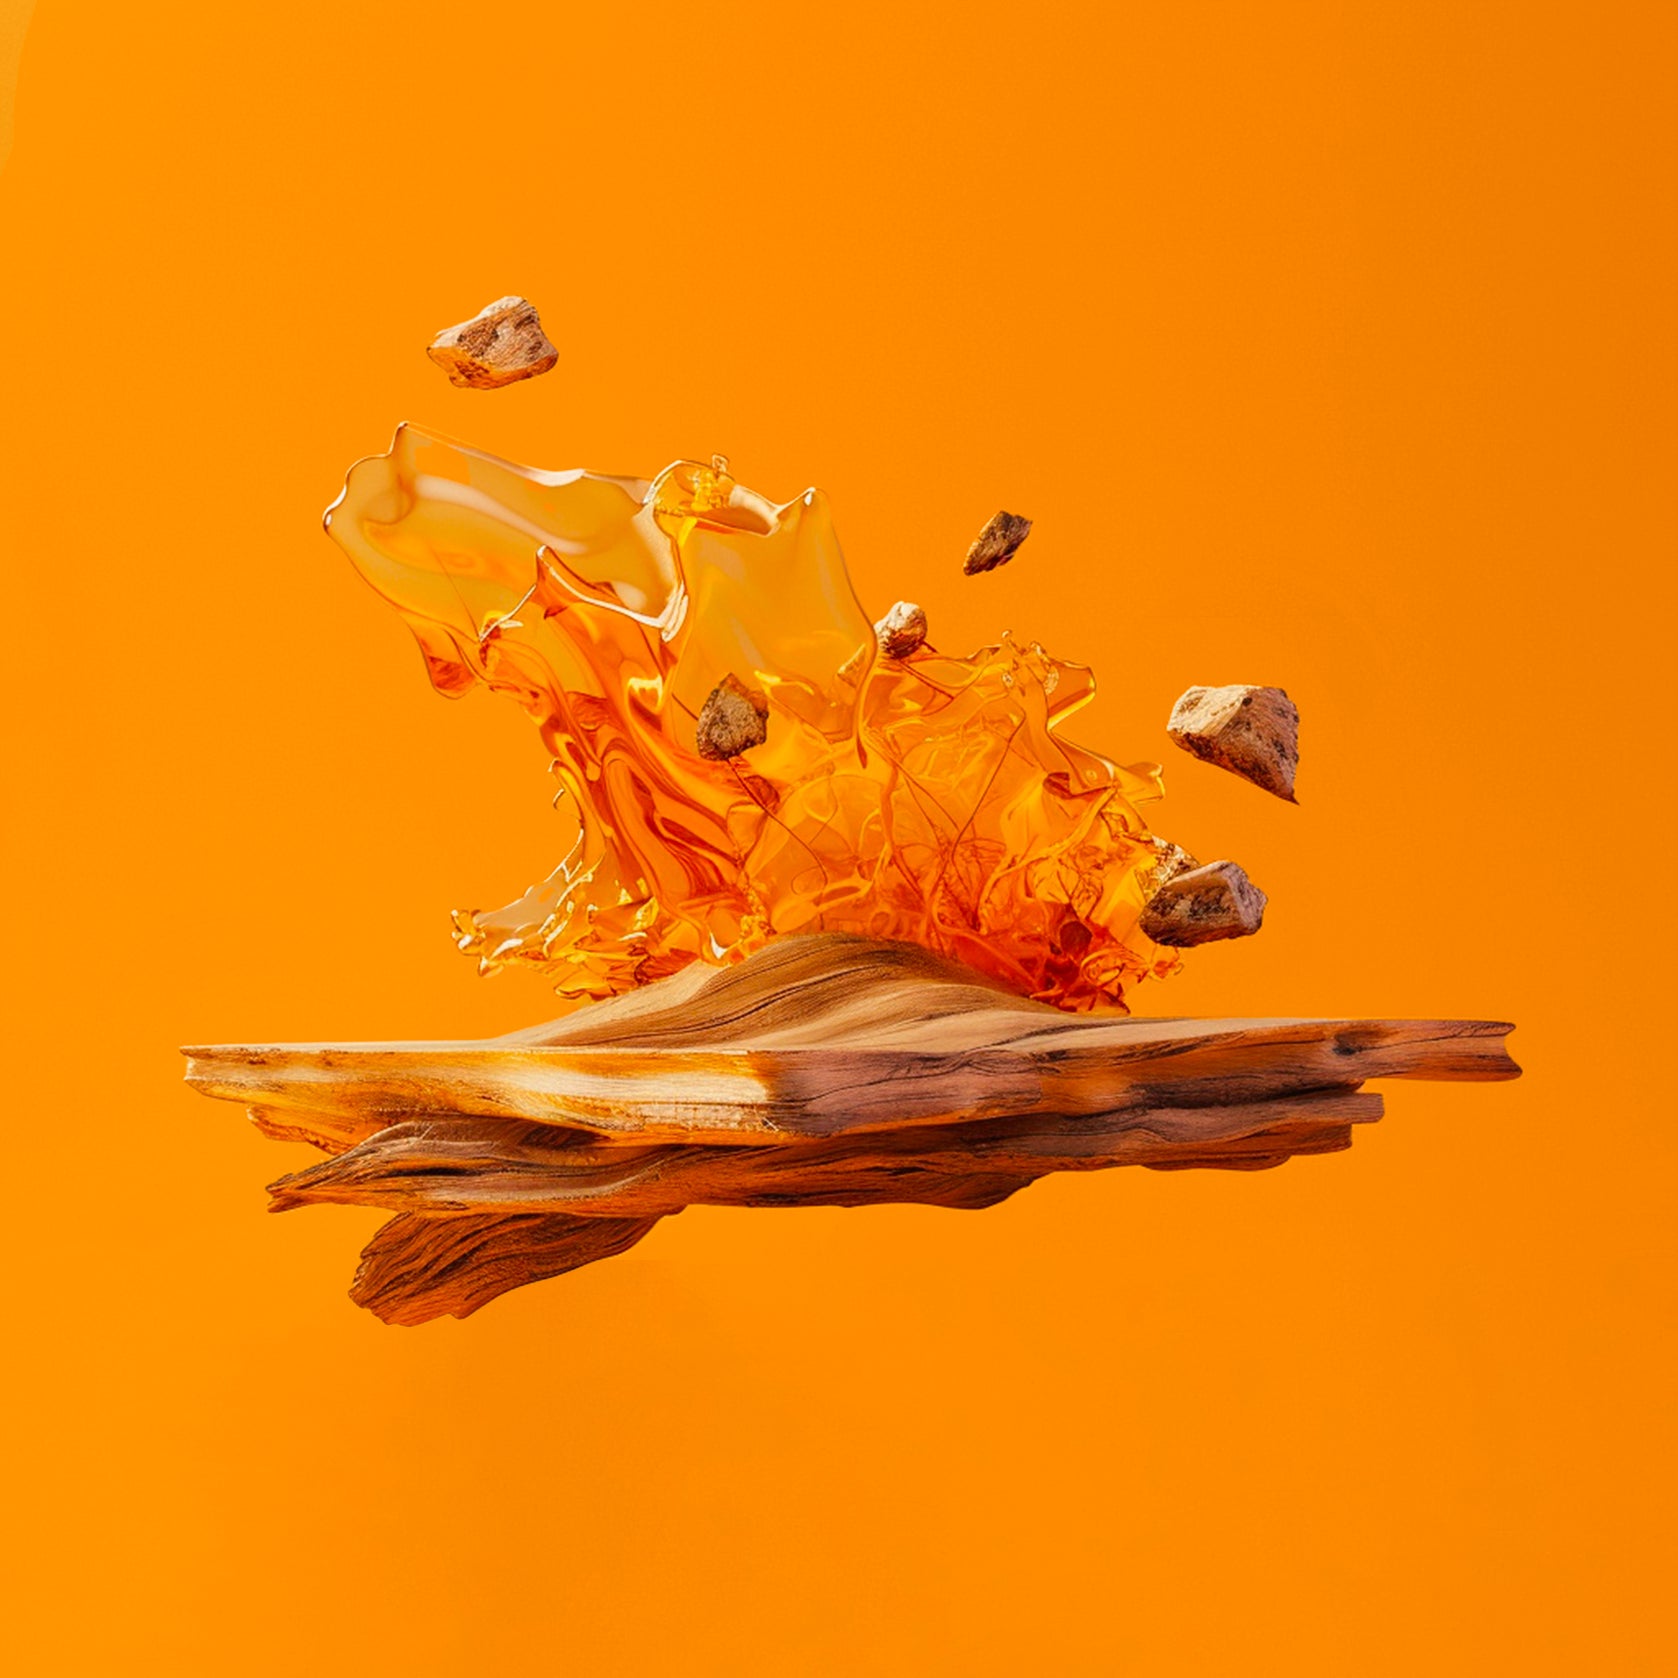 Accord de bois ambré. Photographie de morceaux d’ambre s'échappant d'un morceau de bois, ce qui crée une image très dynamique et chaude.